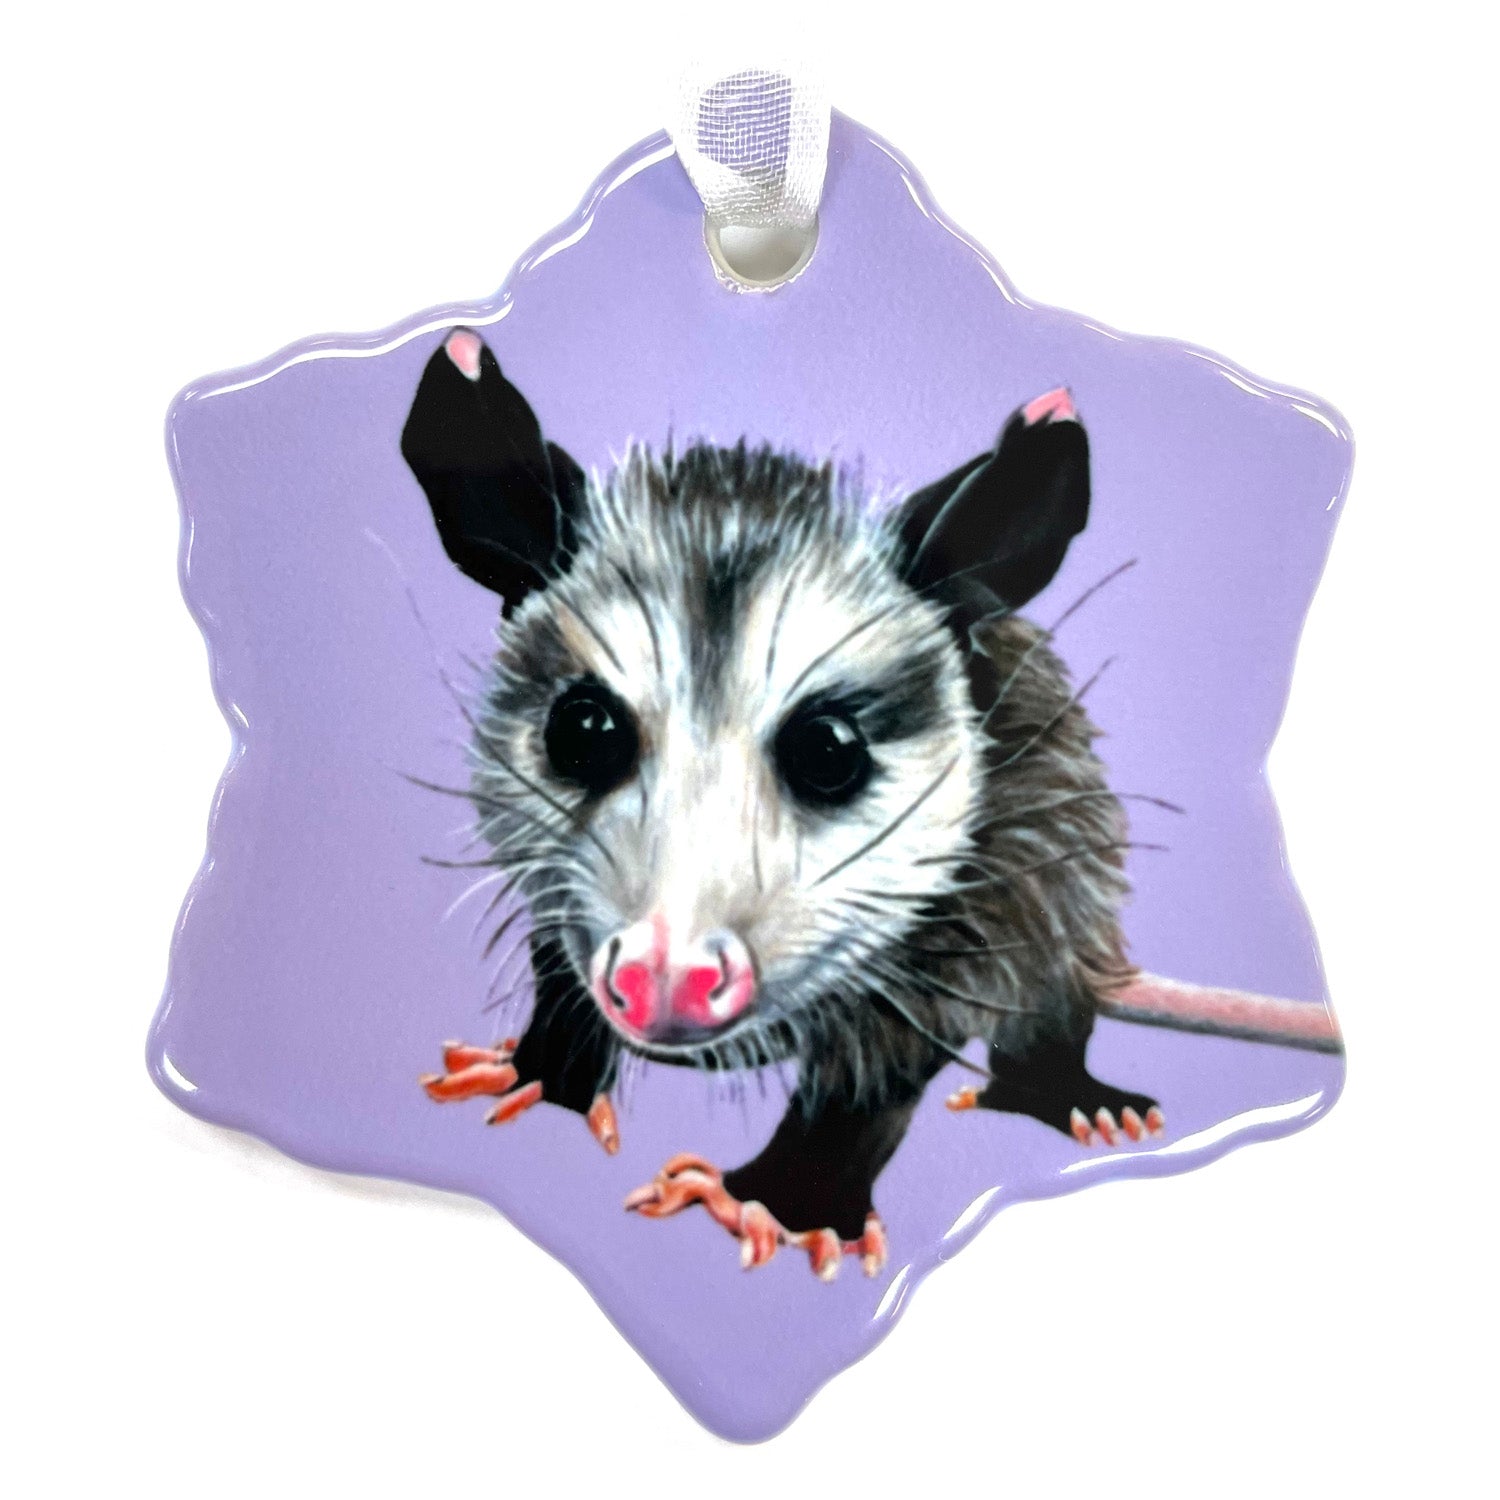 Opossum Porcelain Holiday Ornament – Peanut